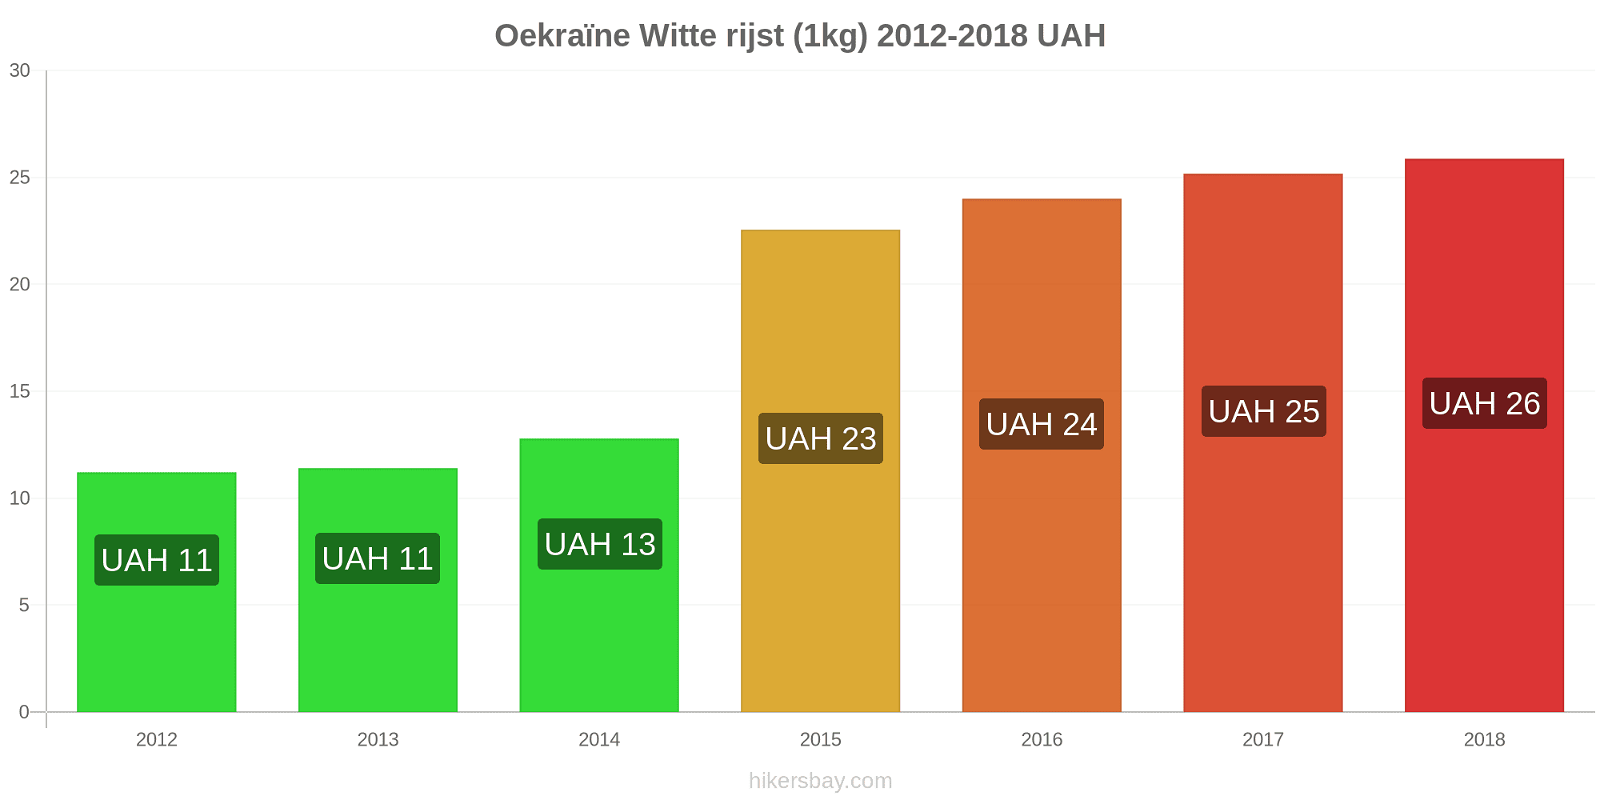 Oekraïne prijswijzigingen Rijst (wit) (1kg) hikersbay.com